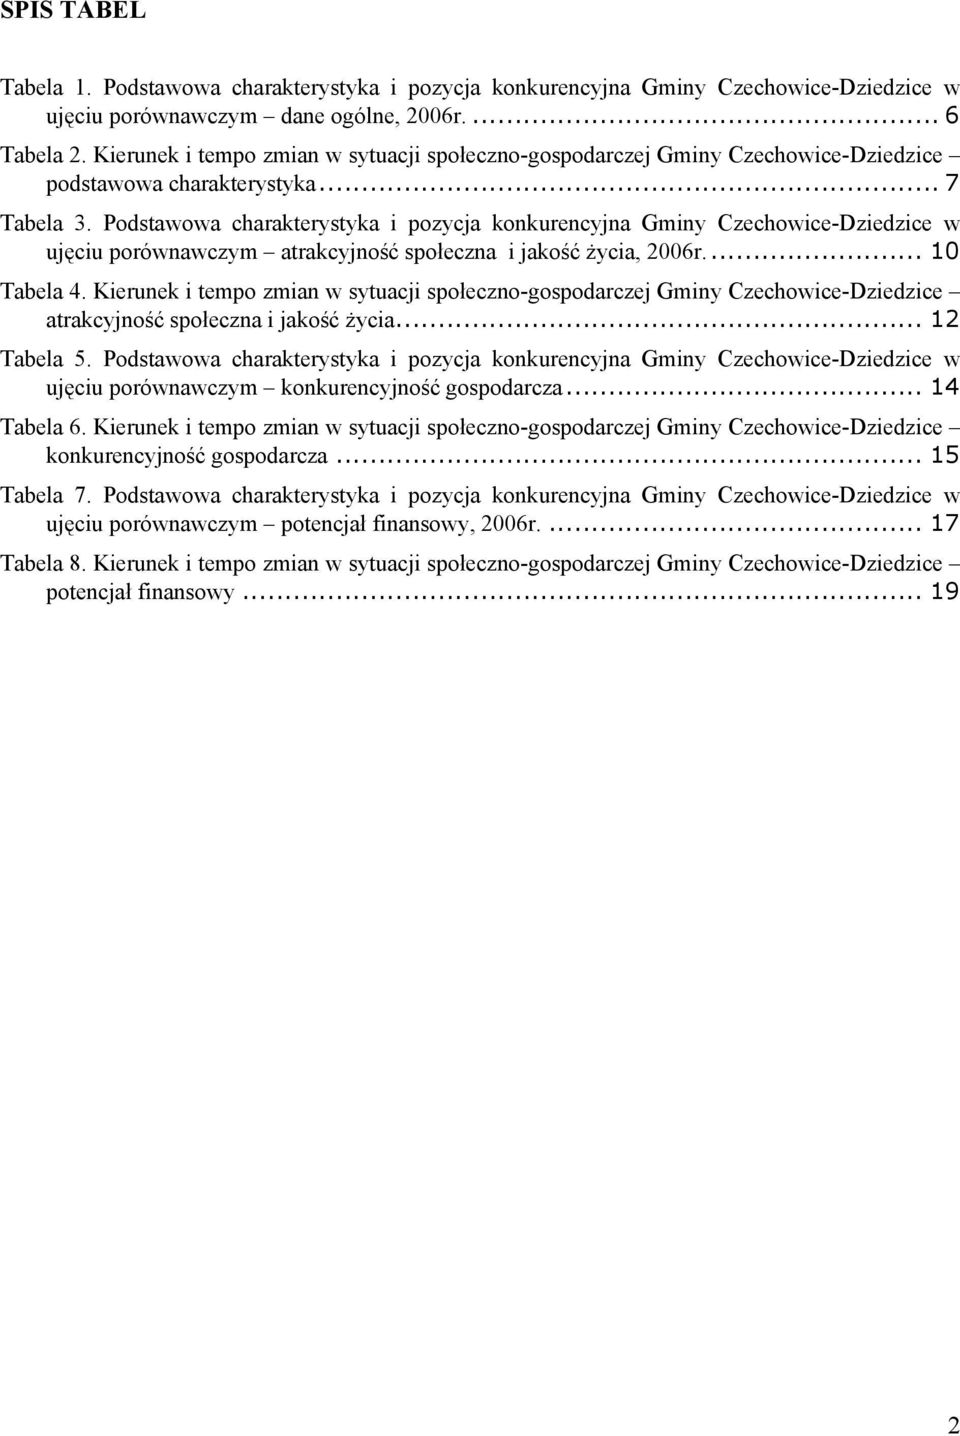 Podstawowa charakterystyka i pozycja konkurencyjna Gminy Czechowice-Dziedzice w ujęciu porównawczym atrakcyjność społeczna i jakość życia, 2006r...10 Tabela 4.